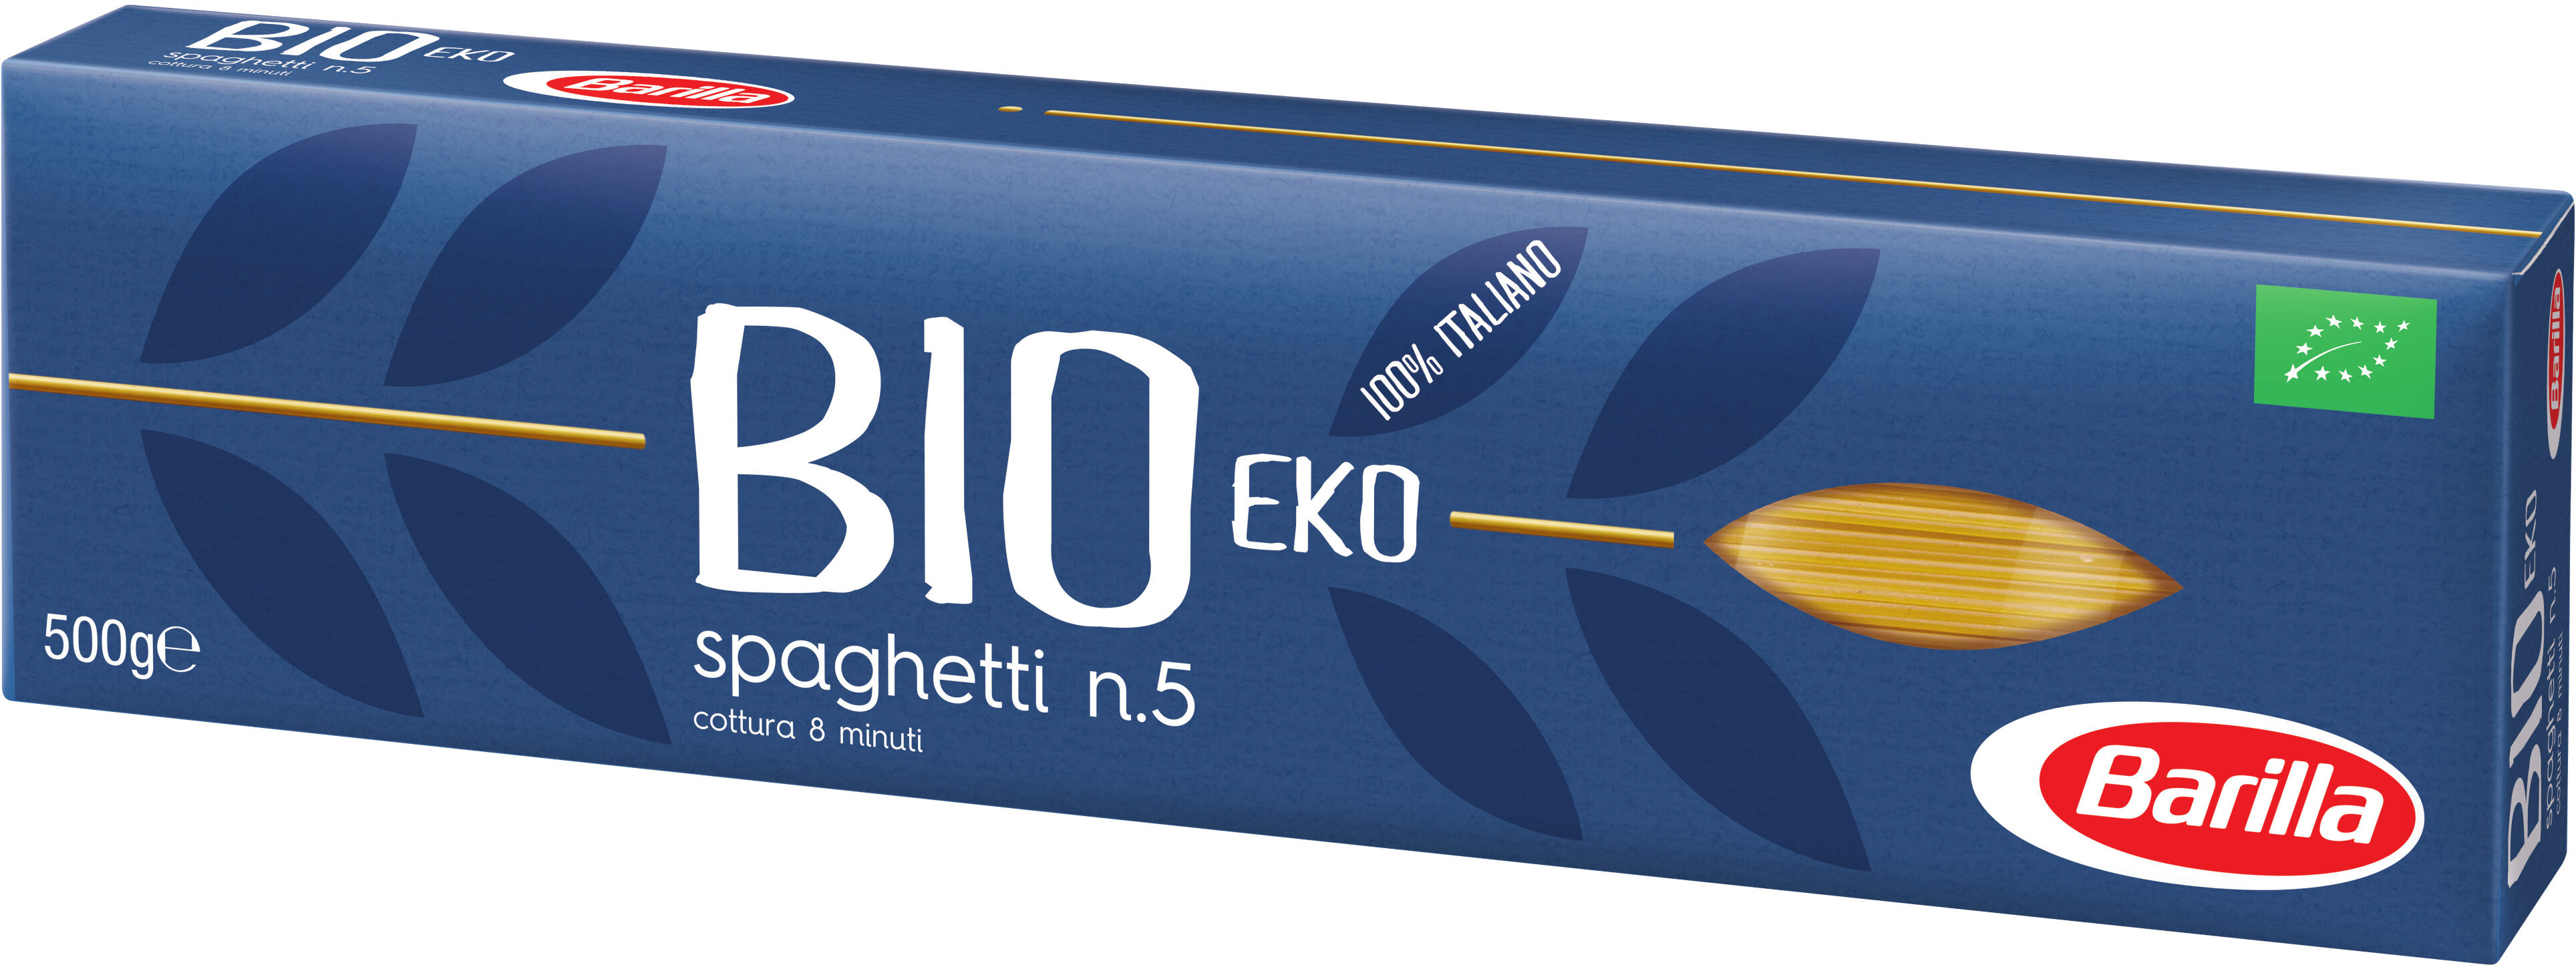 Barilla pates spaghetti bio 500g - Prodotto - fr